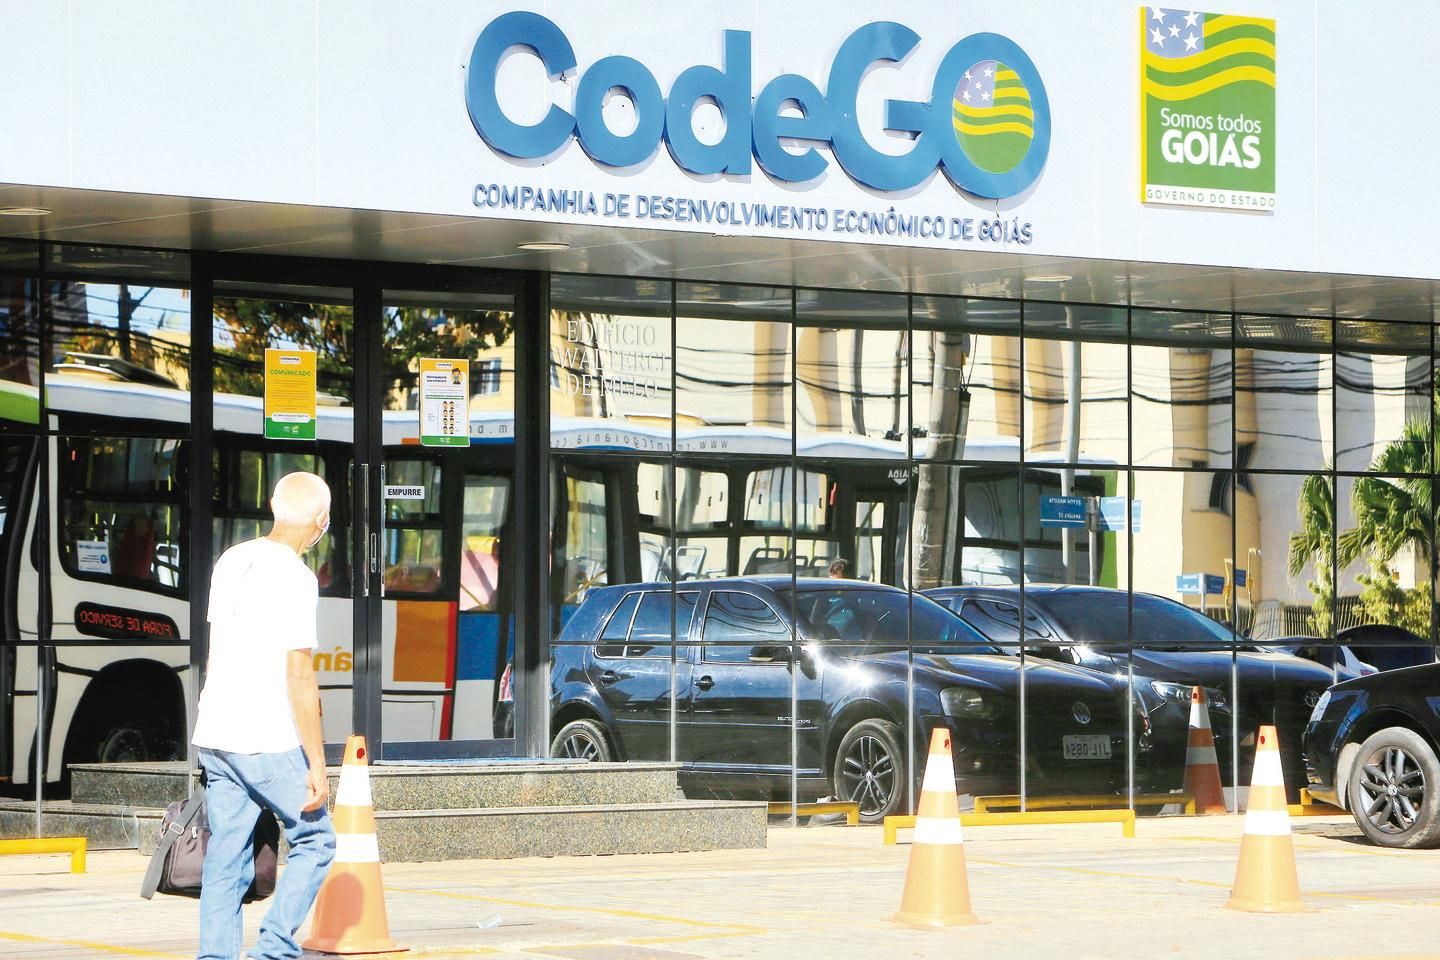 Enel cobrou de Goiás dinheiro que não tinha direito - Dia Online